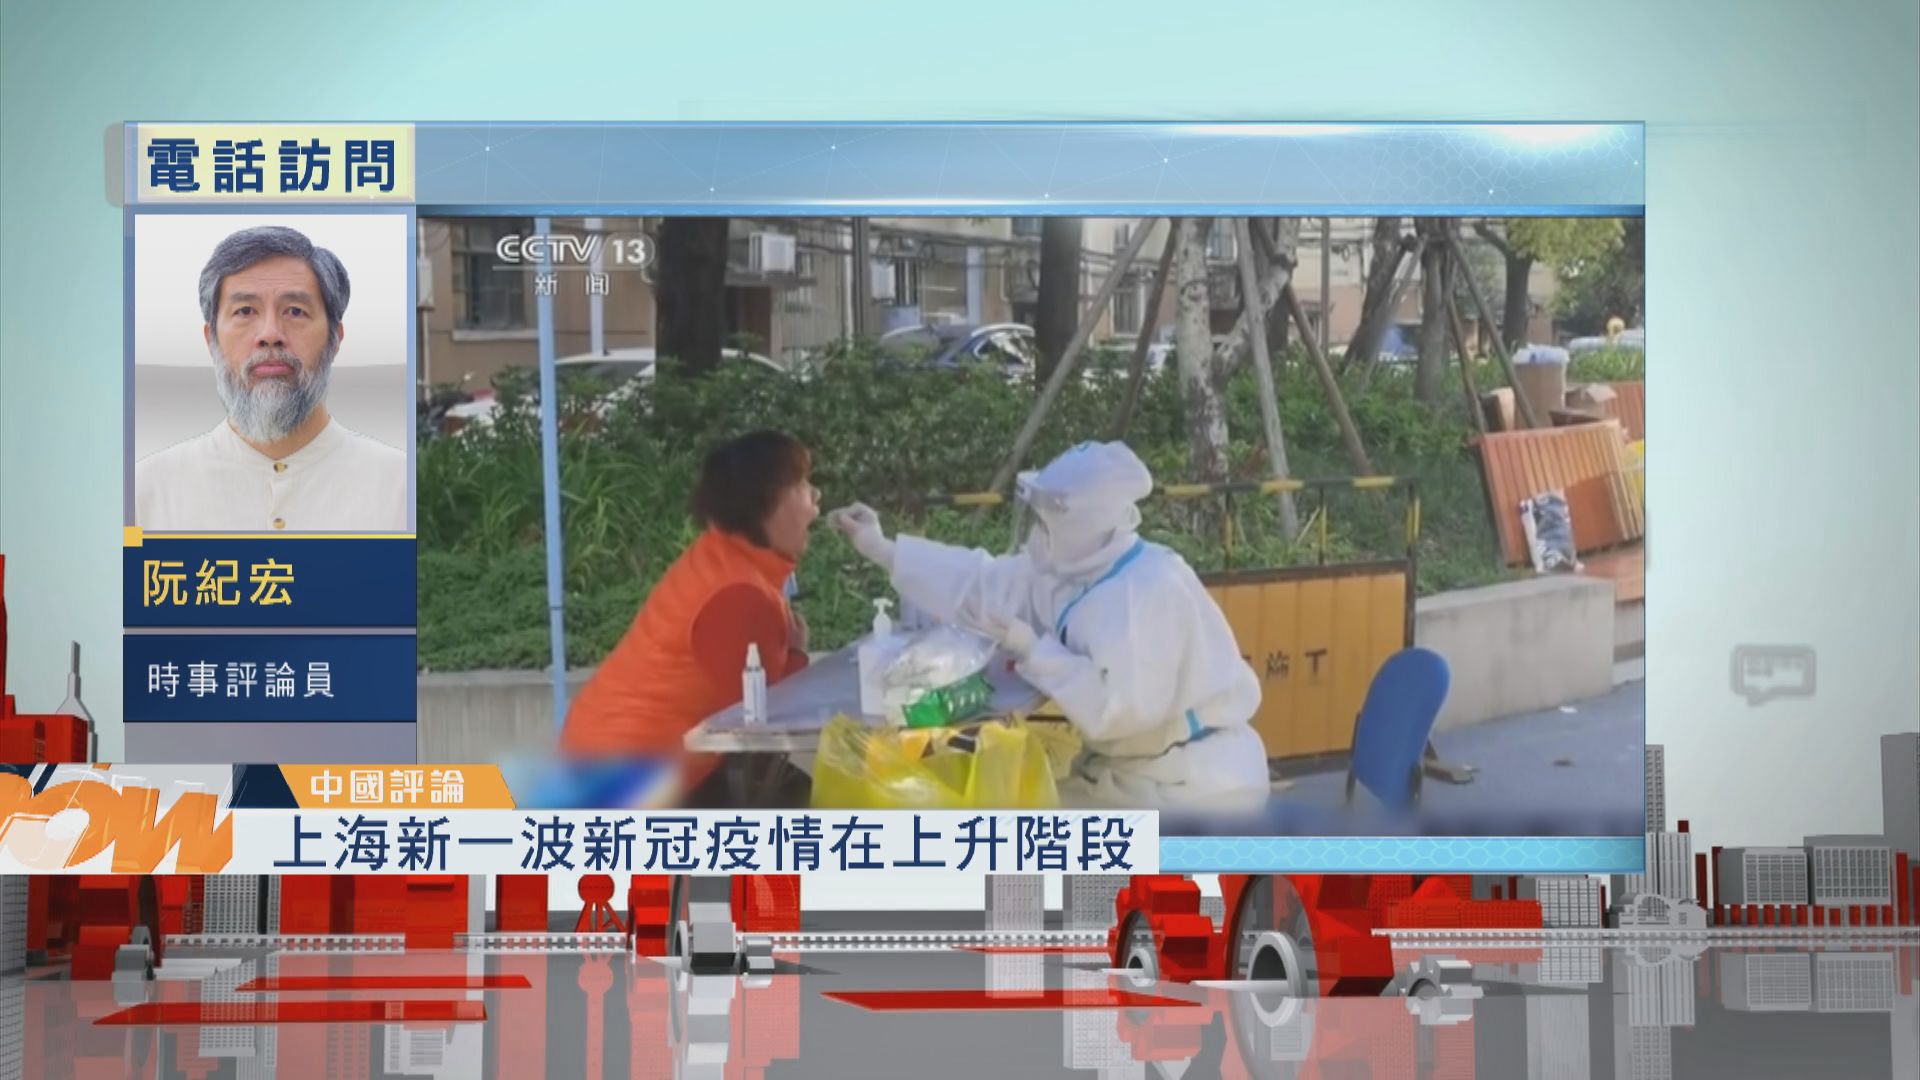 【中國評論】上海新一波新冠疫情在上升階段